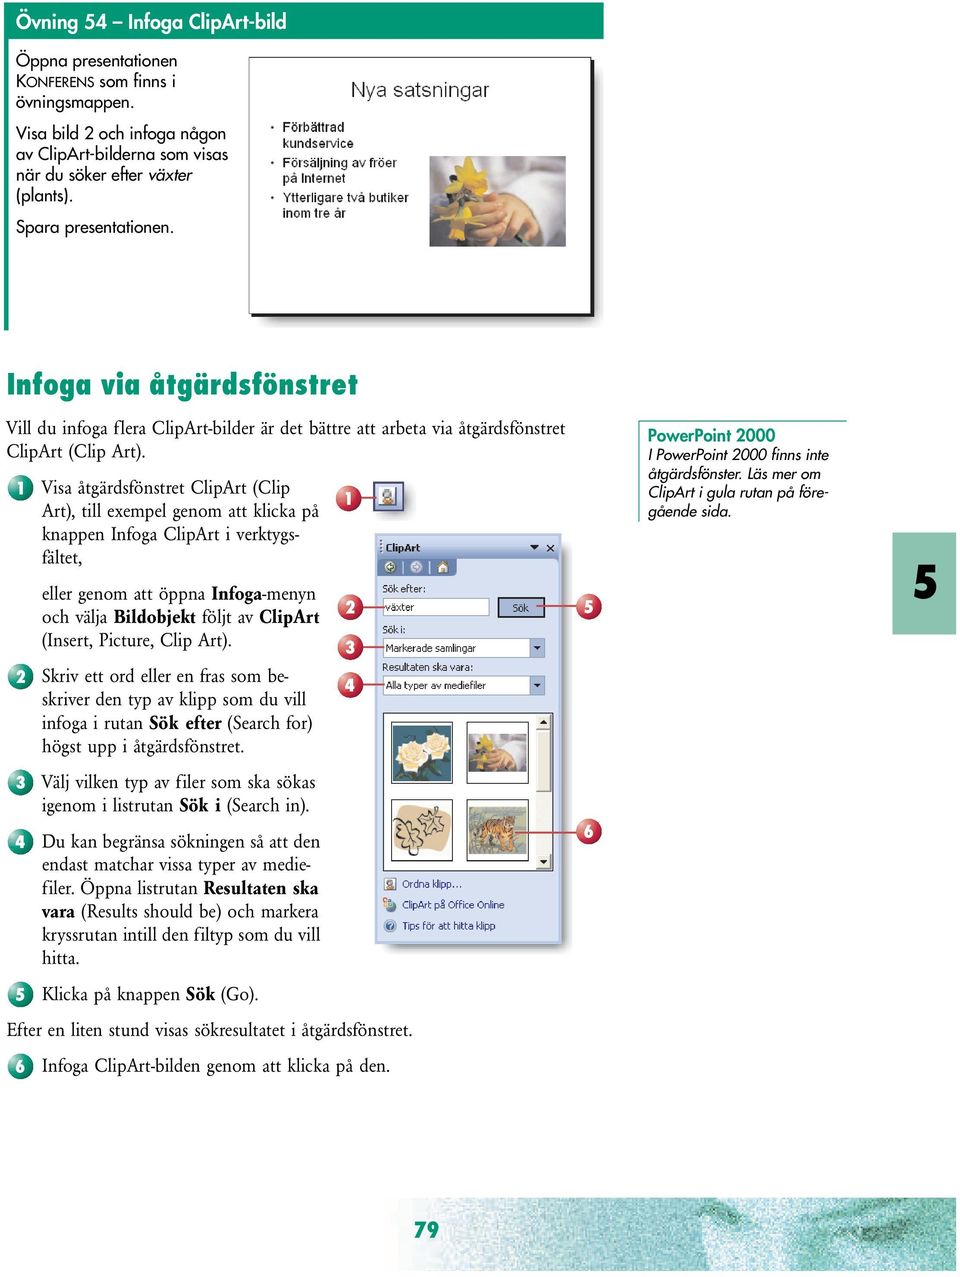 Visa åtgärdsfönstret ClipArt (Clip Art), till exempel genom att klicka på knappen Infoga ClipArt i verktygsfältet, eller genom att öppna Infoga-menyn och välja Bildobjekt följt av ClipArt (Insert,